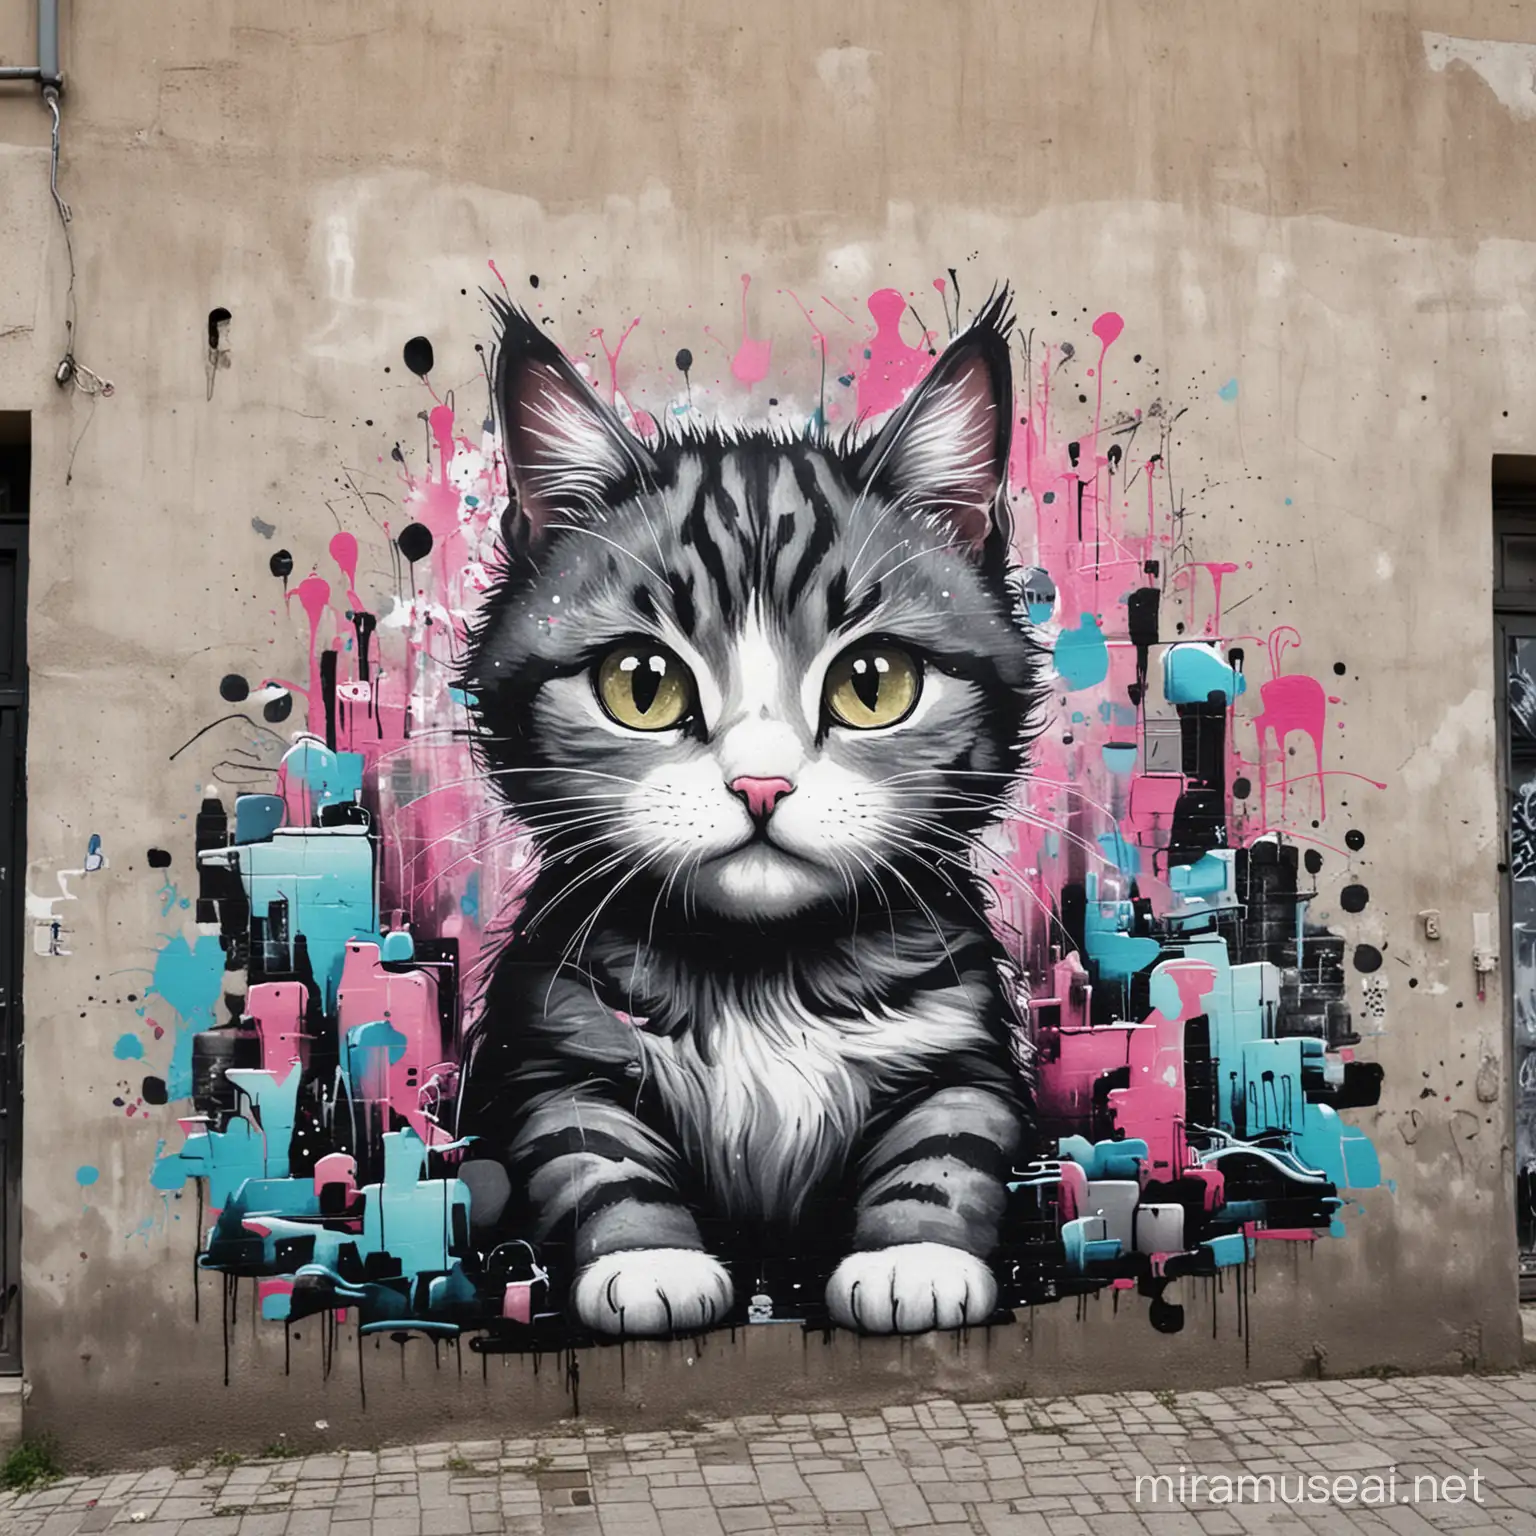 Urban Street Art Graffiti Cat in Vibrant Colors